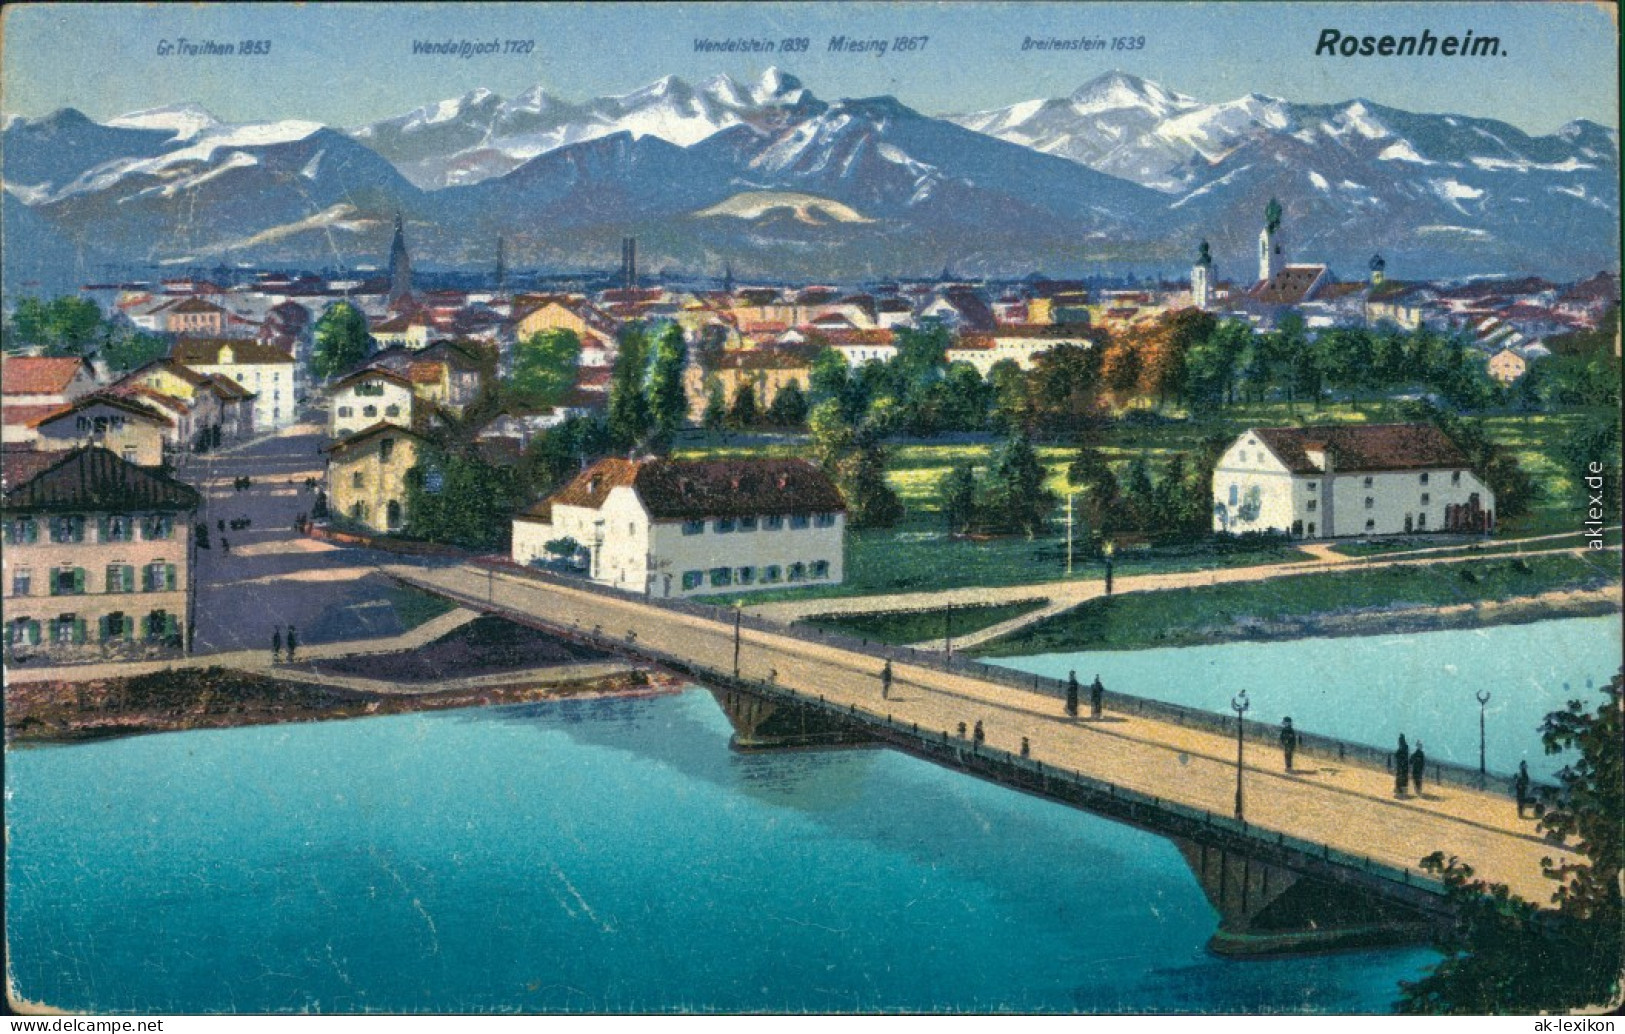 Ansichtskarte Rosenheim Panorama Mit Weitblick (Zeichnung) 1917 - Rosenheim